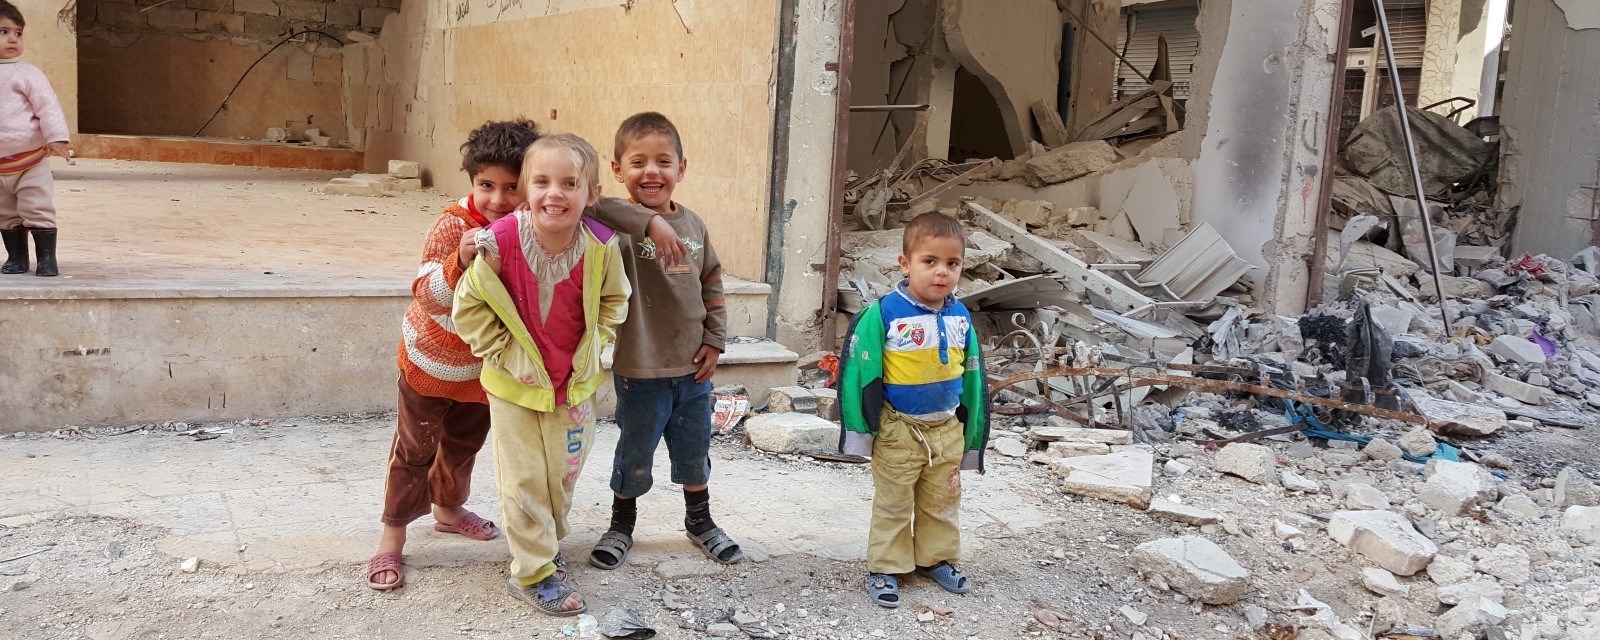 Barn står i en gate omgitt av ruiner